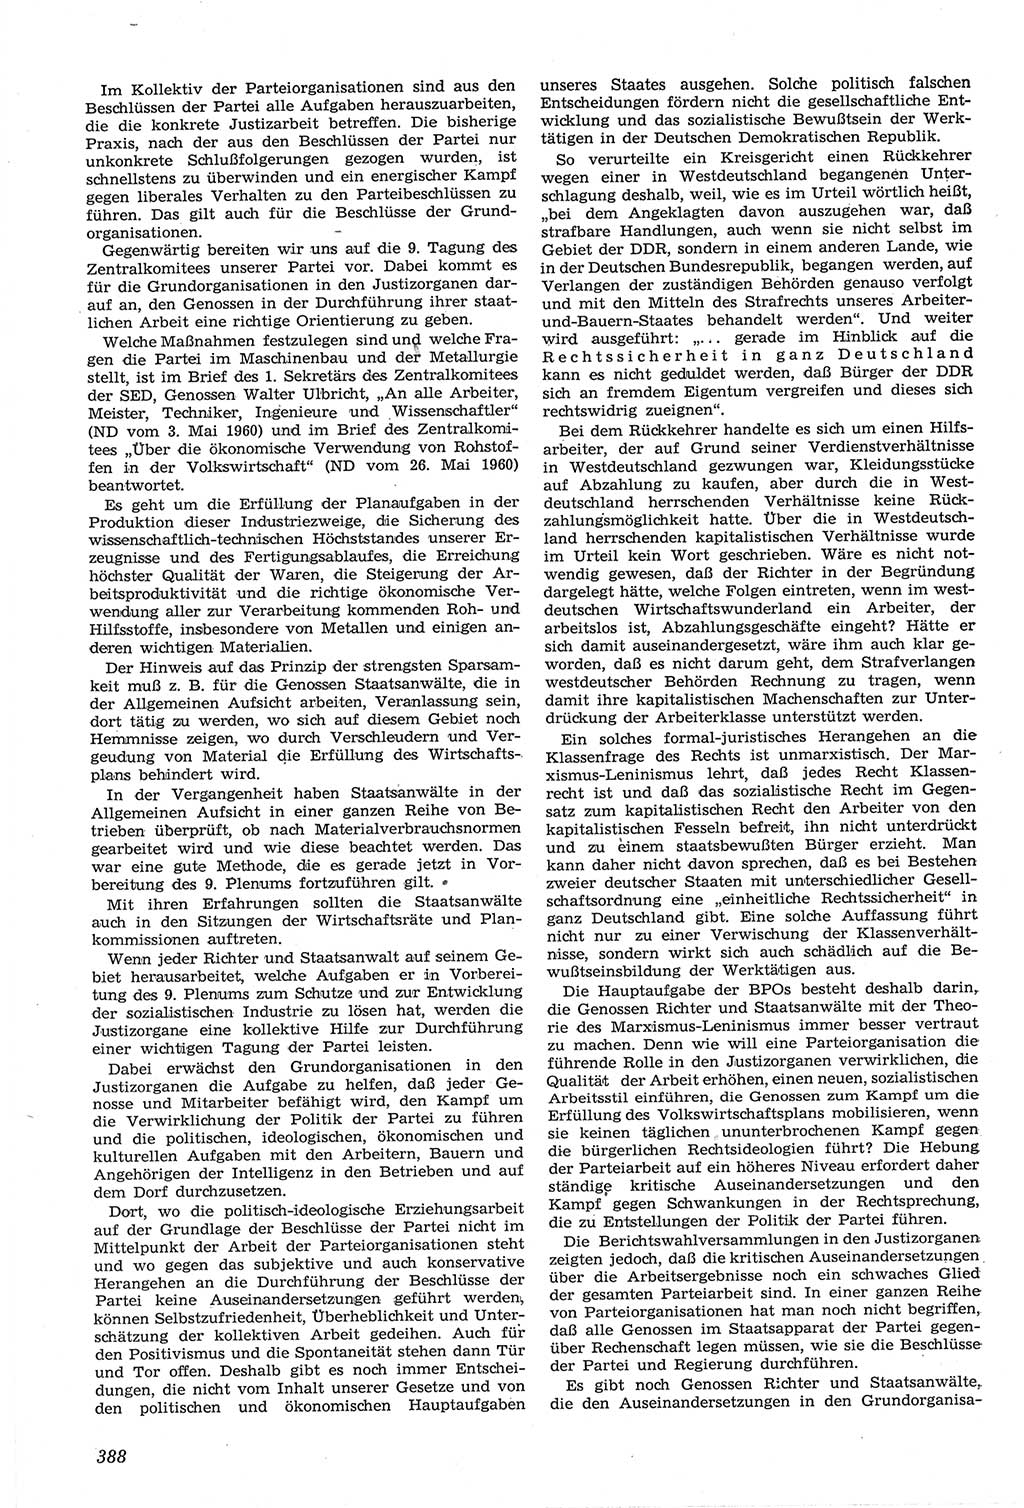 Neue Justiz (NJ), Zeitschrift für Recht und Rechtswissenschaft [Deutsche Demokratische Republik (DDR)], 14. Jahrgang 1960, Seite 388 (NJ DDR 1960, S. 388)